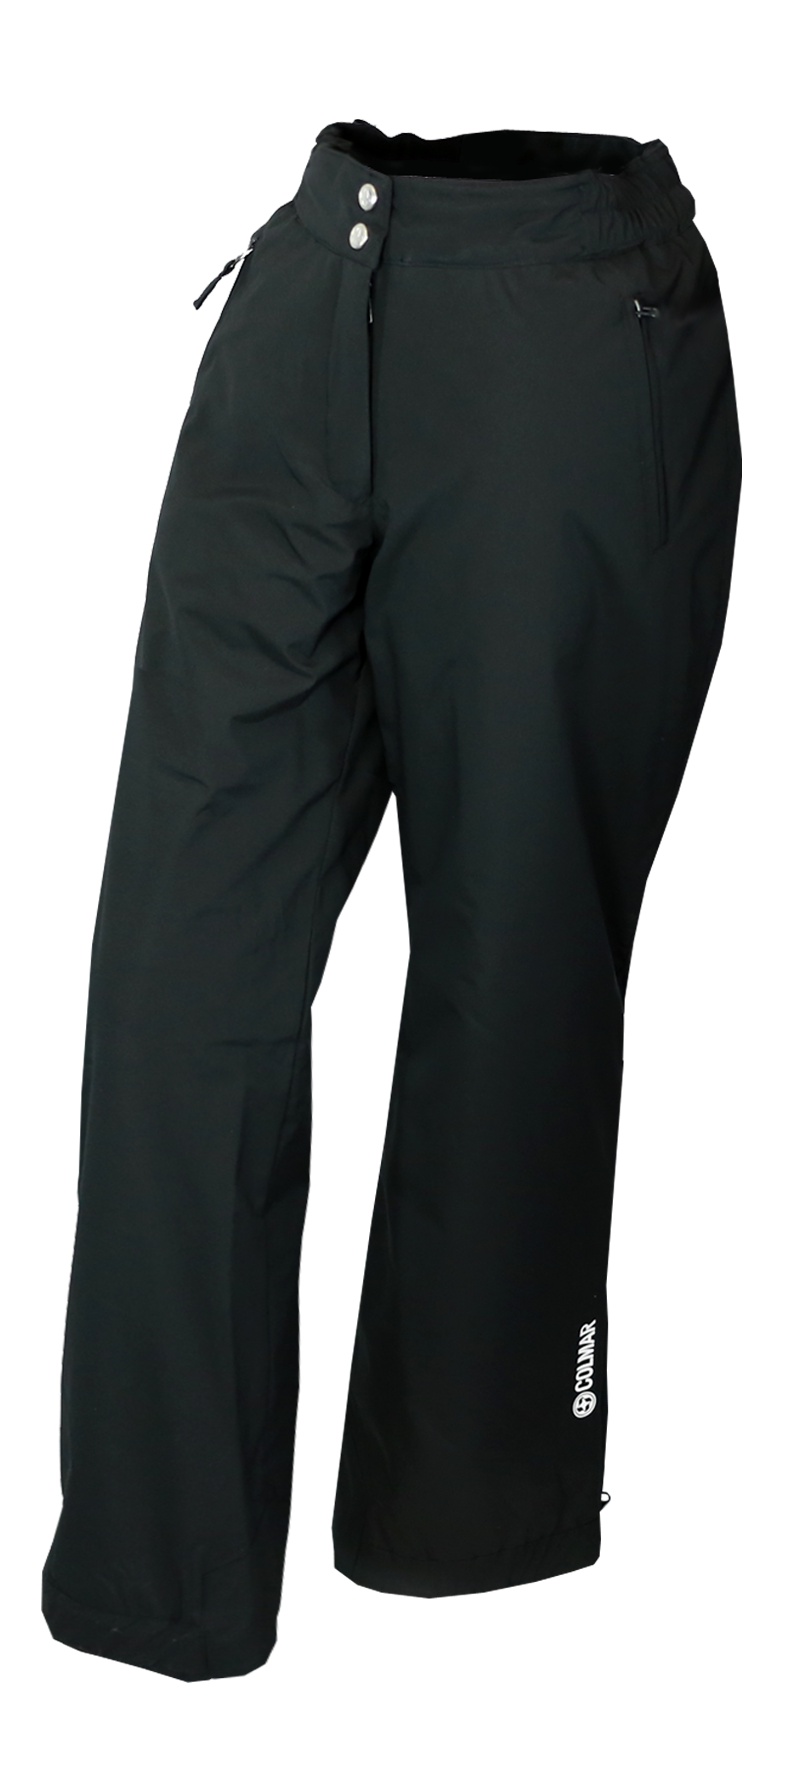 Kalhoty Colmar Ladies Pants 0443N Black model 2015/16 - Teamsport